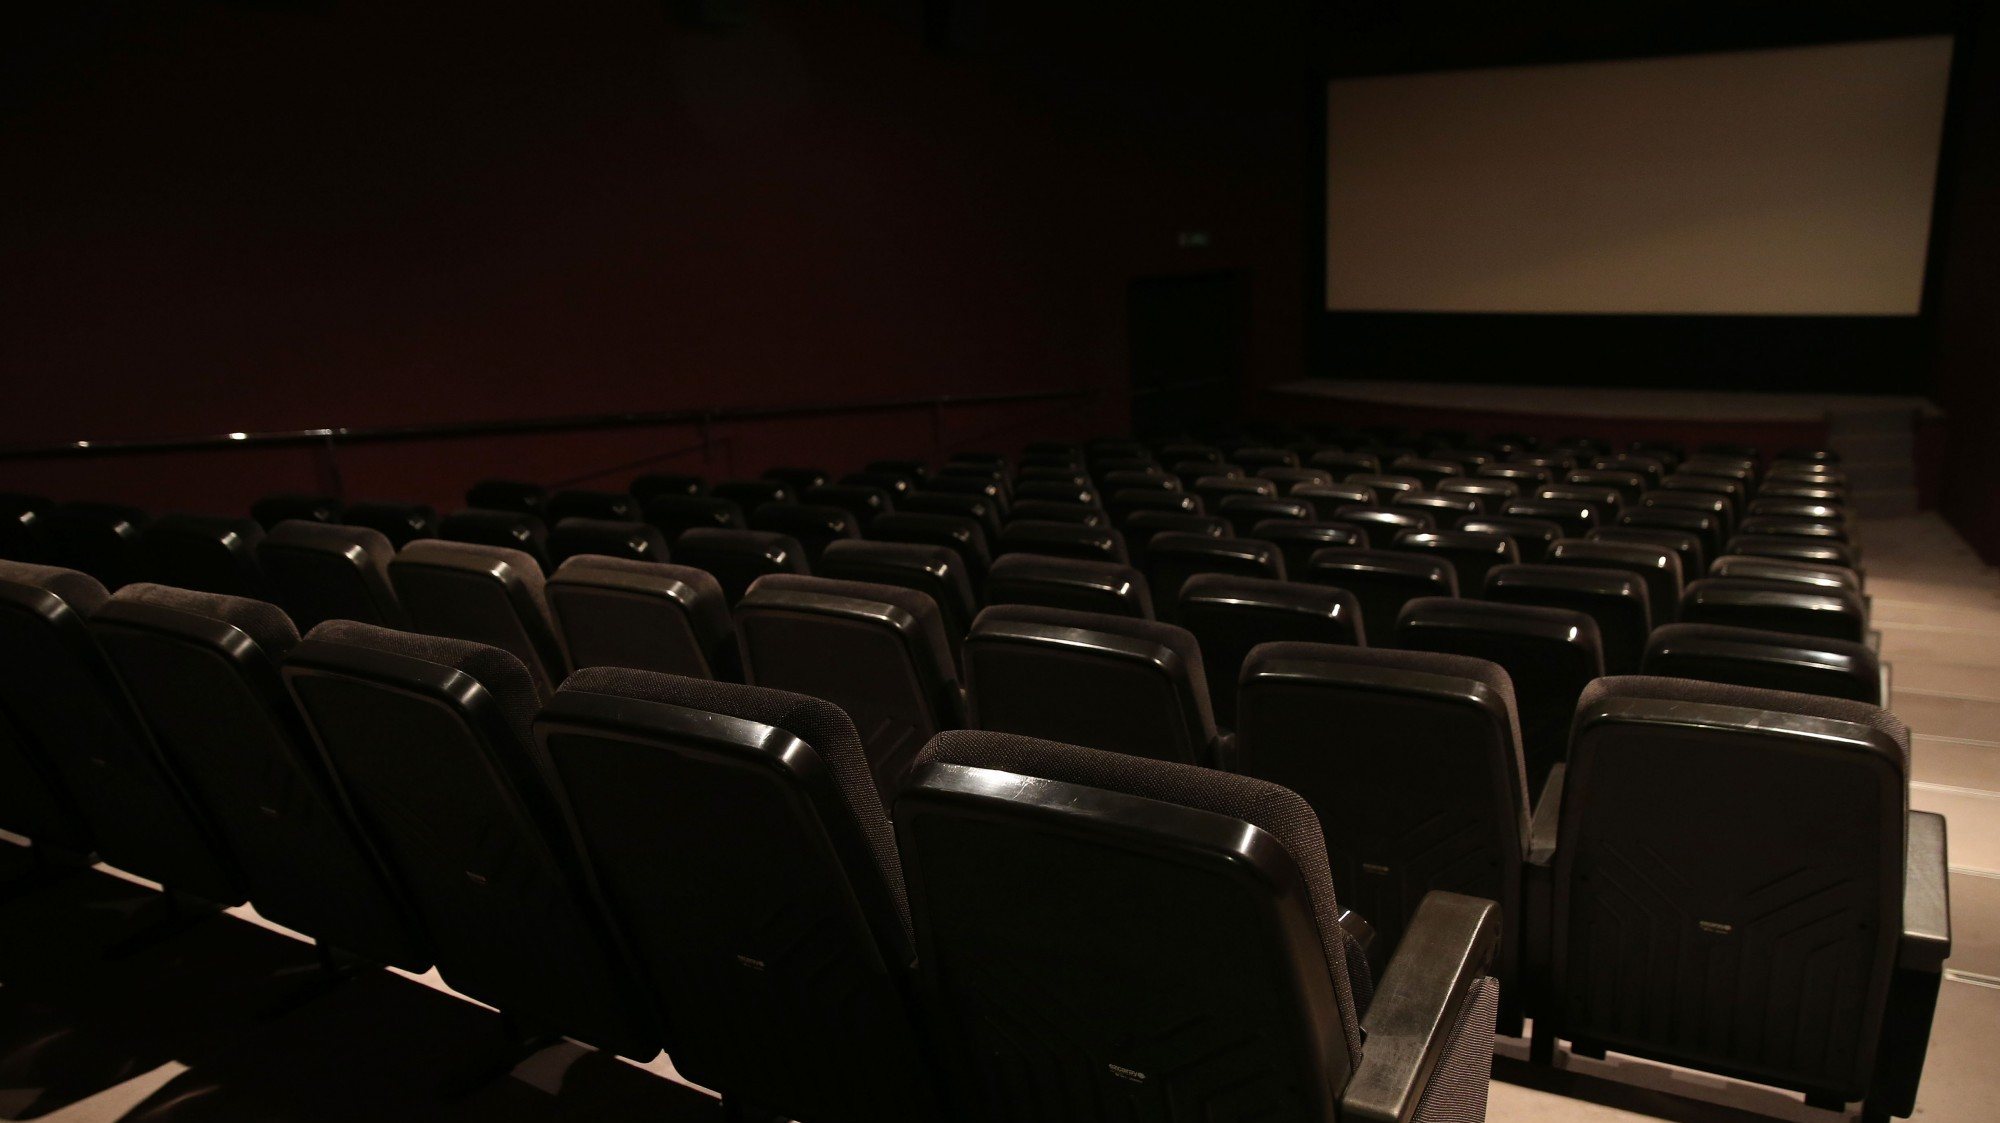 As salas de cinema tiveram fortes quebras de bilheteira em 2020